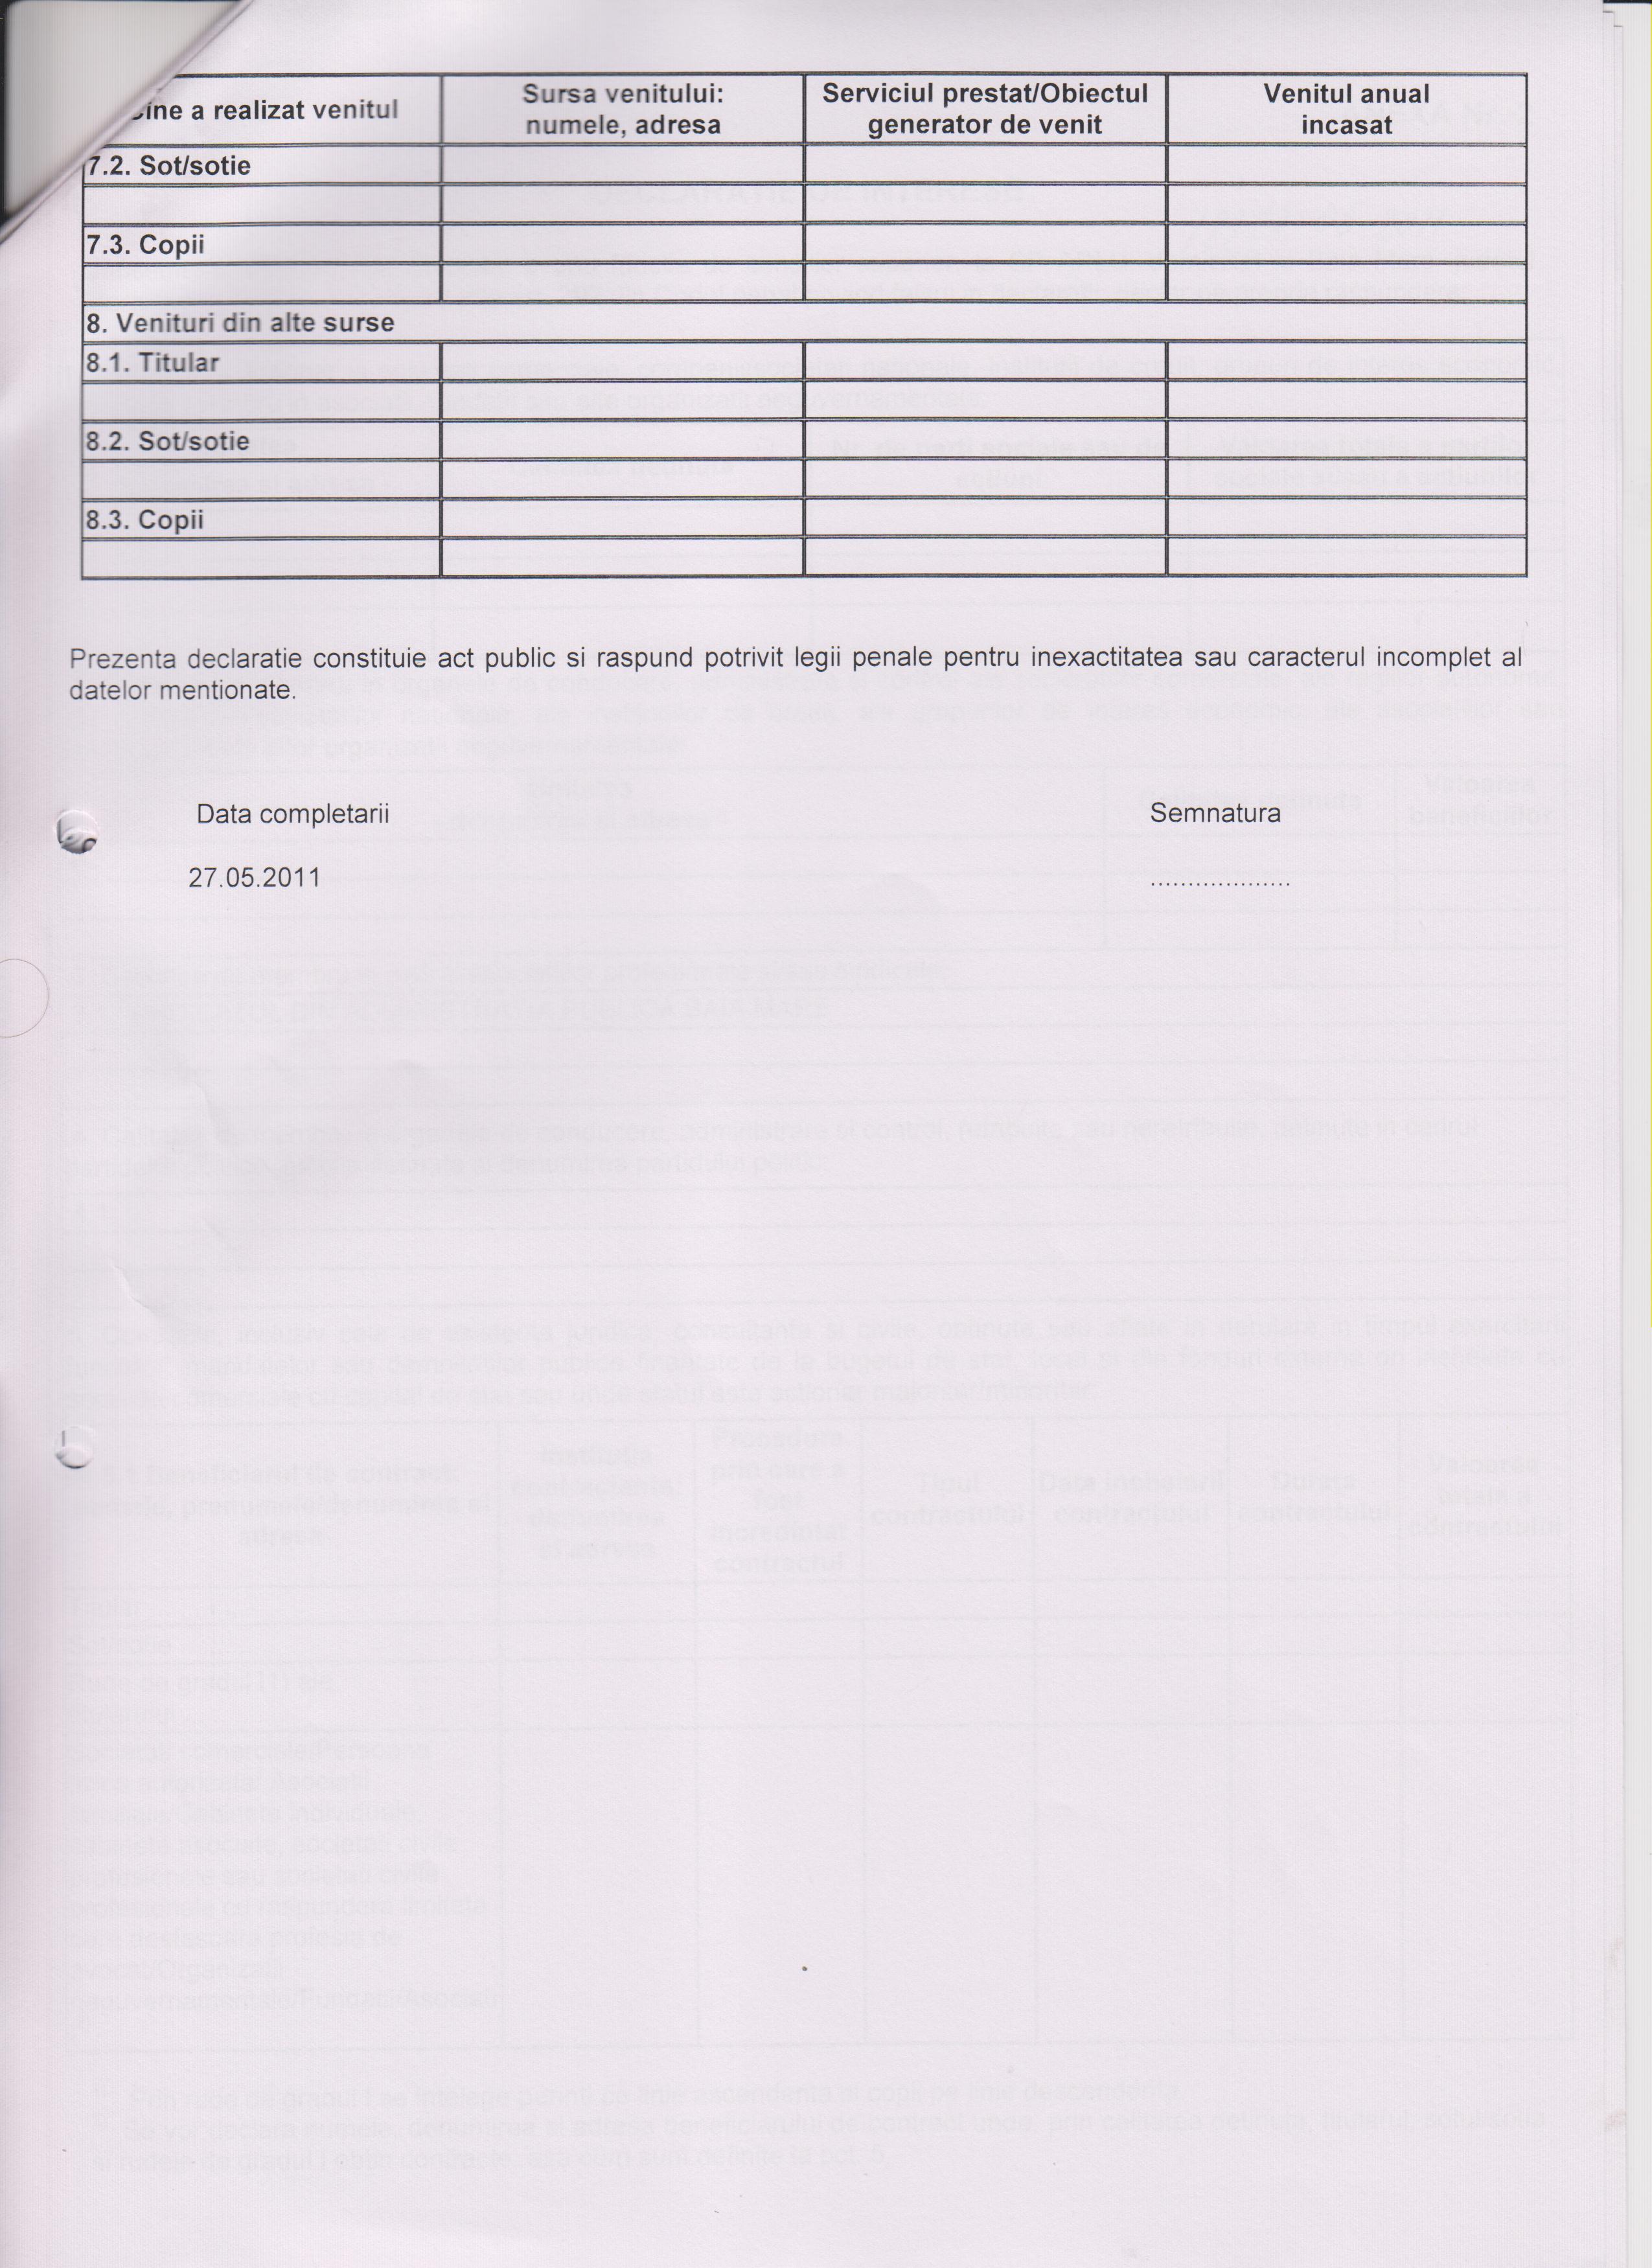 Declaratia de avere si de interese din data 21.09.2011 - pagina 4 din 6